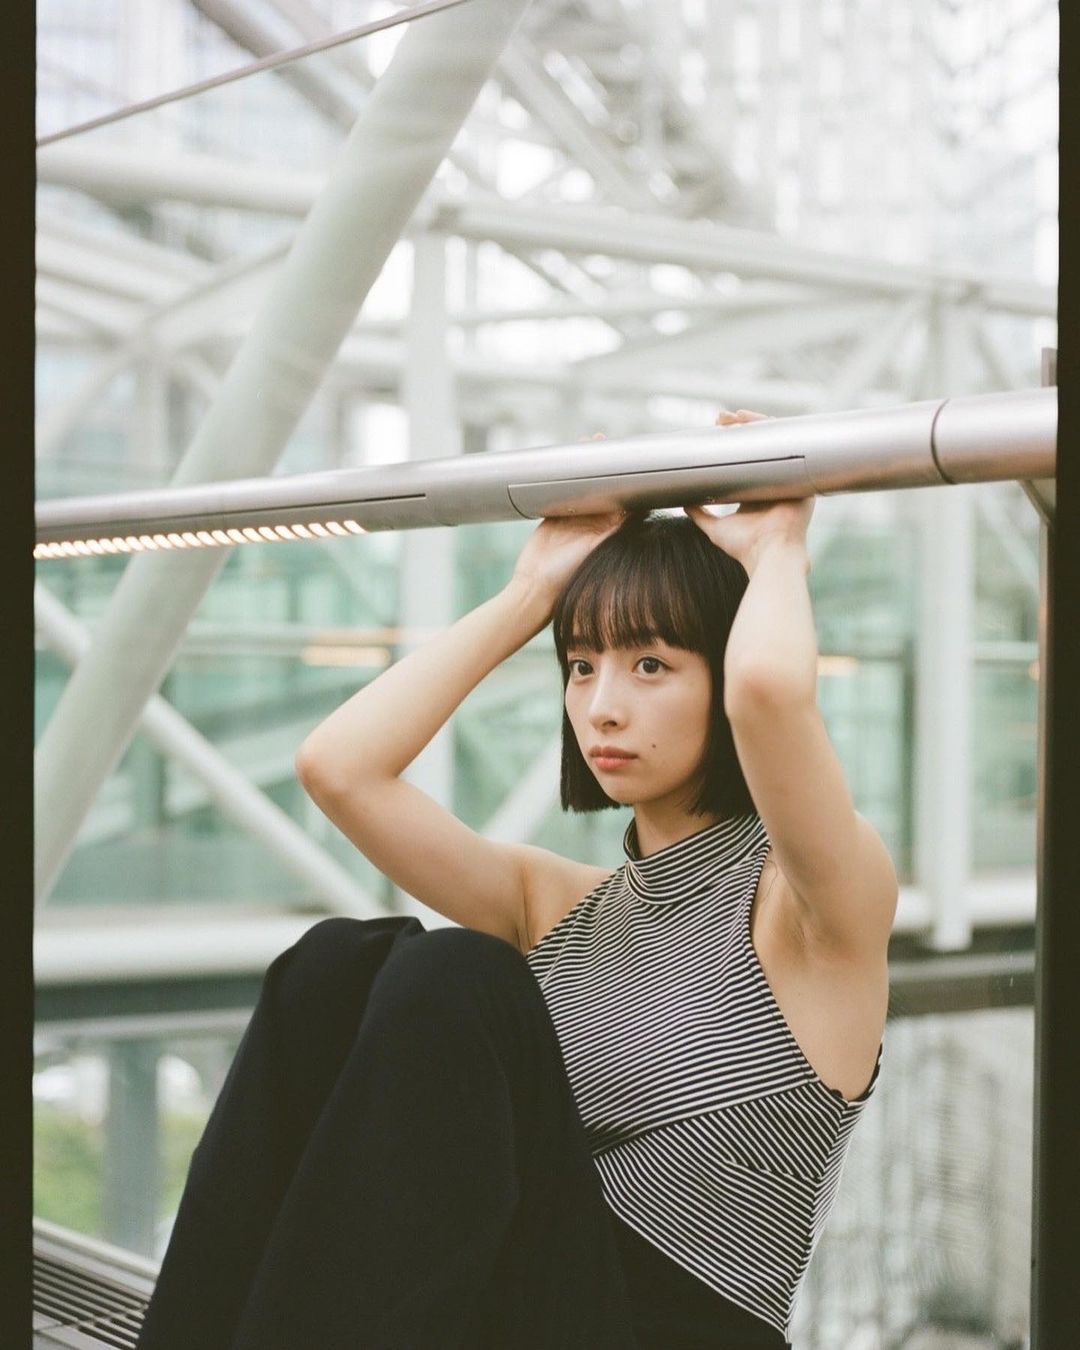 Asuka Hanamura, a gravure model from the basketball team